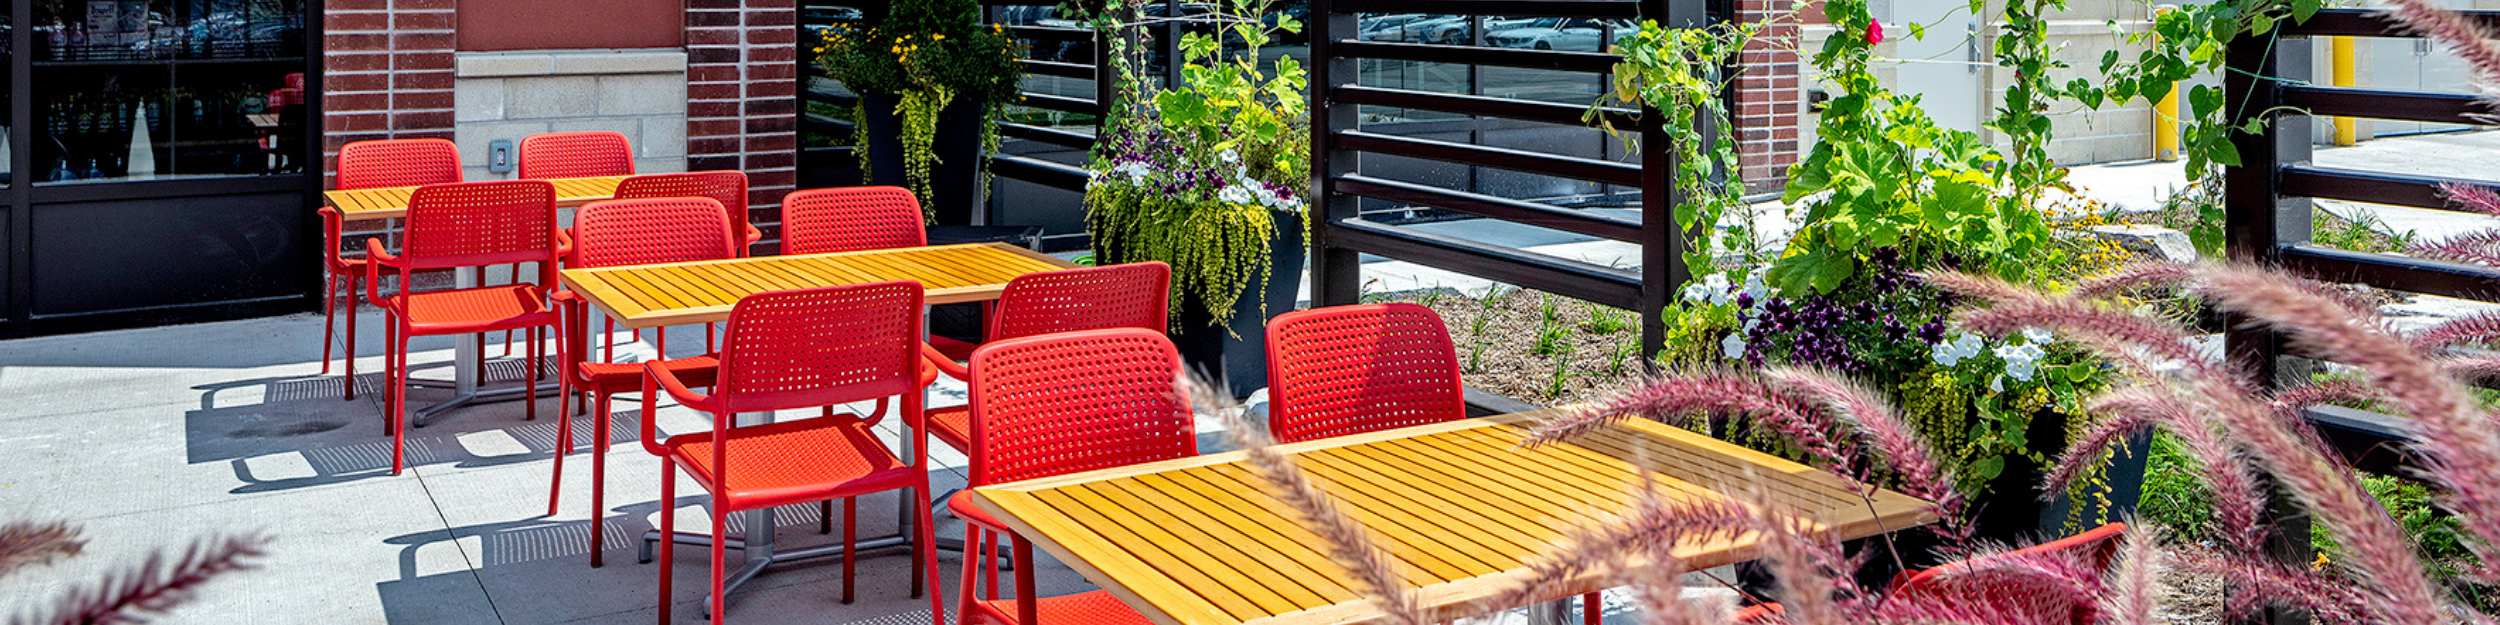 Tables et chaises de patio aux couleurs vives